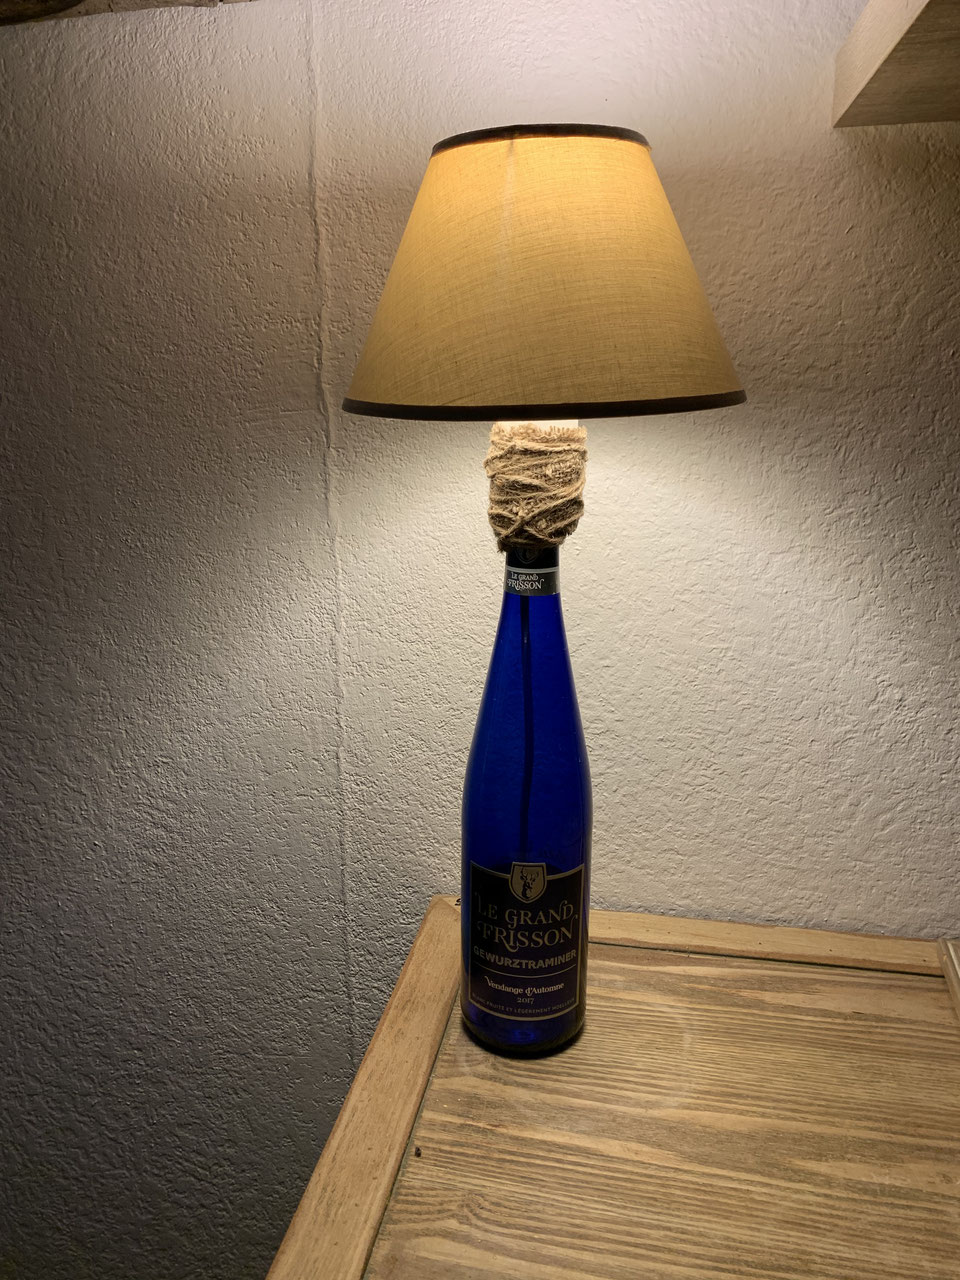 Lampes bouteilles - Les créations en bois flotté de Créafleurette